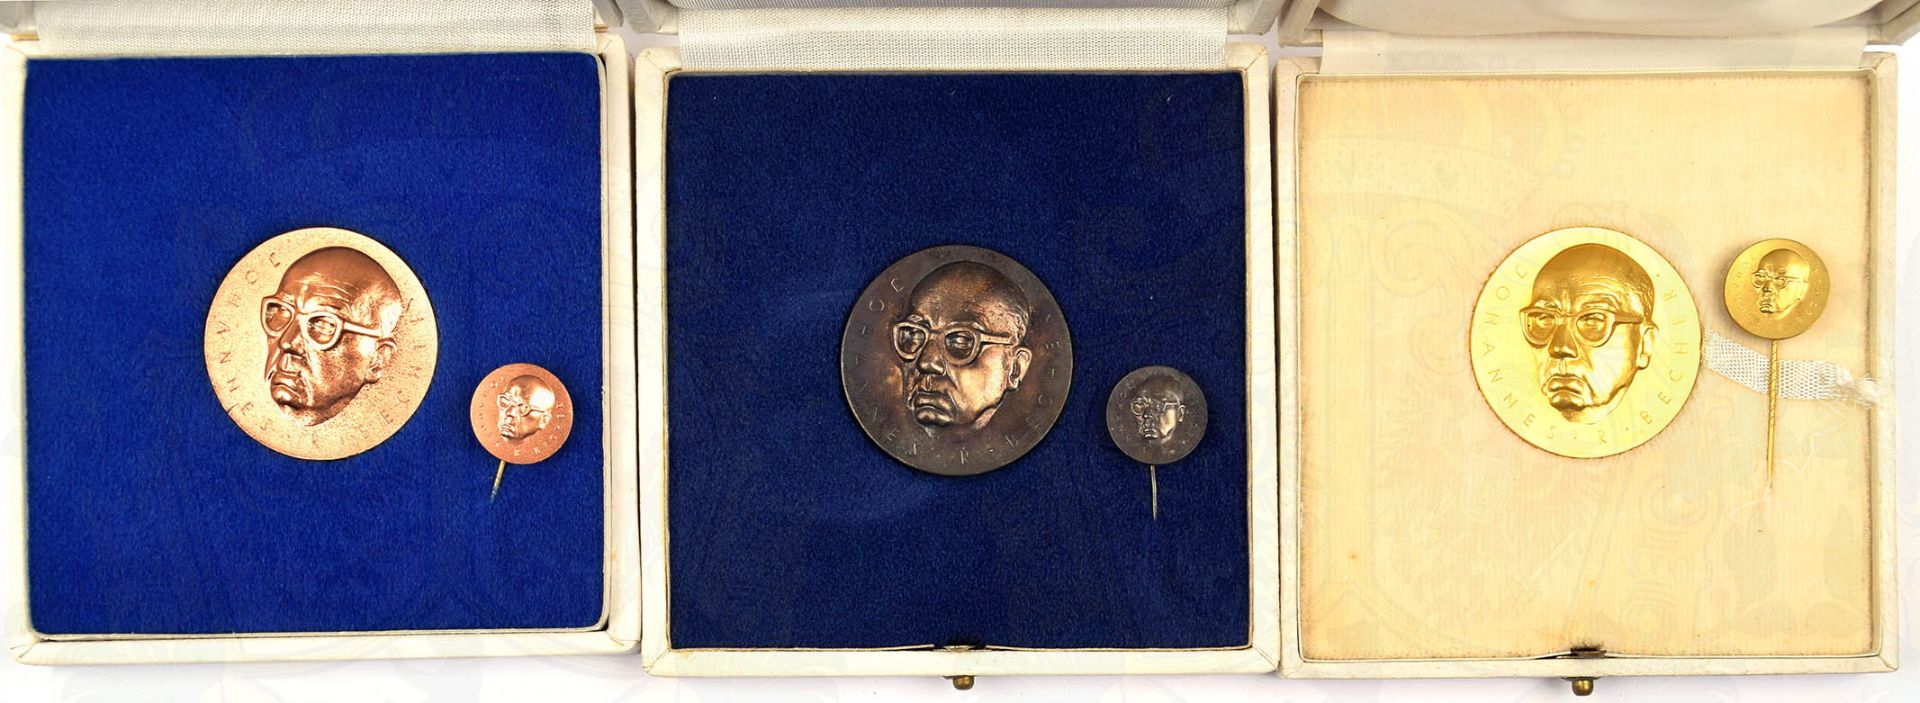 SATZ JOHANNES R. BECHER-MEDAILLE, Stufen in Bronze/Silber/Gold, Buntmetall, mit entspr. Miniatur, im - Bild 3 aus 3